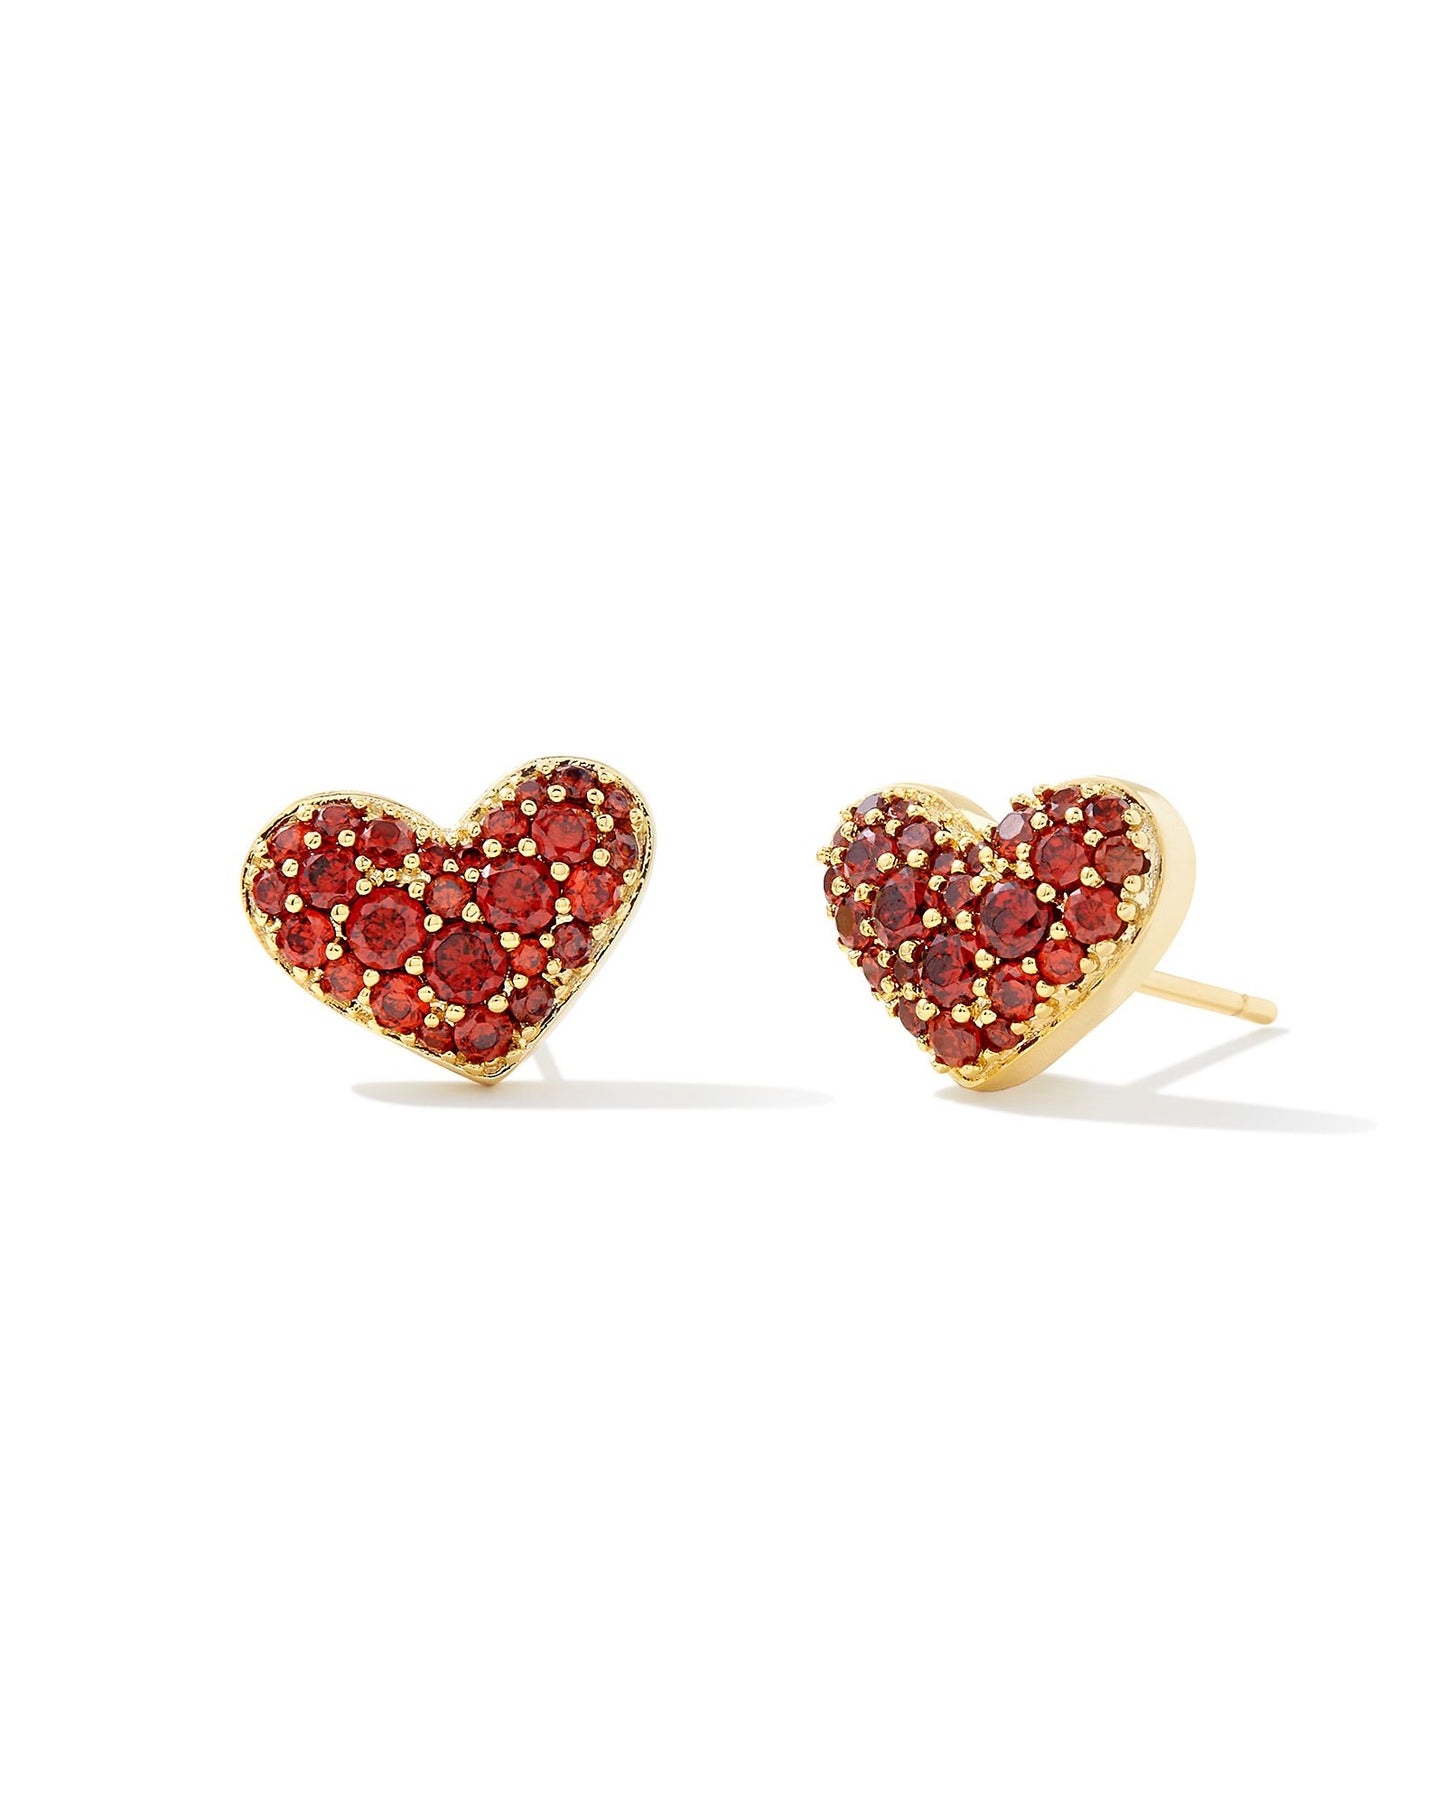 Kendra Scott Ari Pave Crystal Heart Earrings Gold Red Crystal-Earrings-Kendra Scott-E1993GLD-The Twisted Chandelier